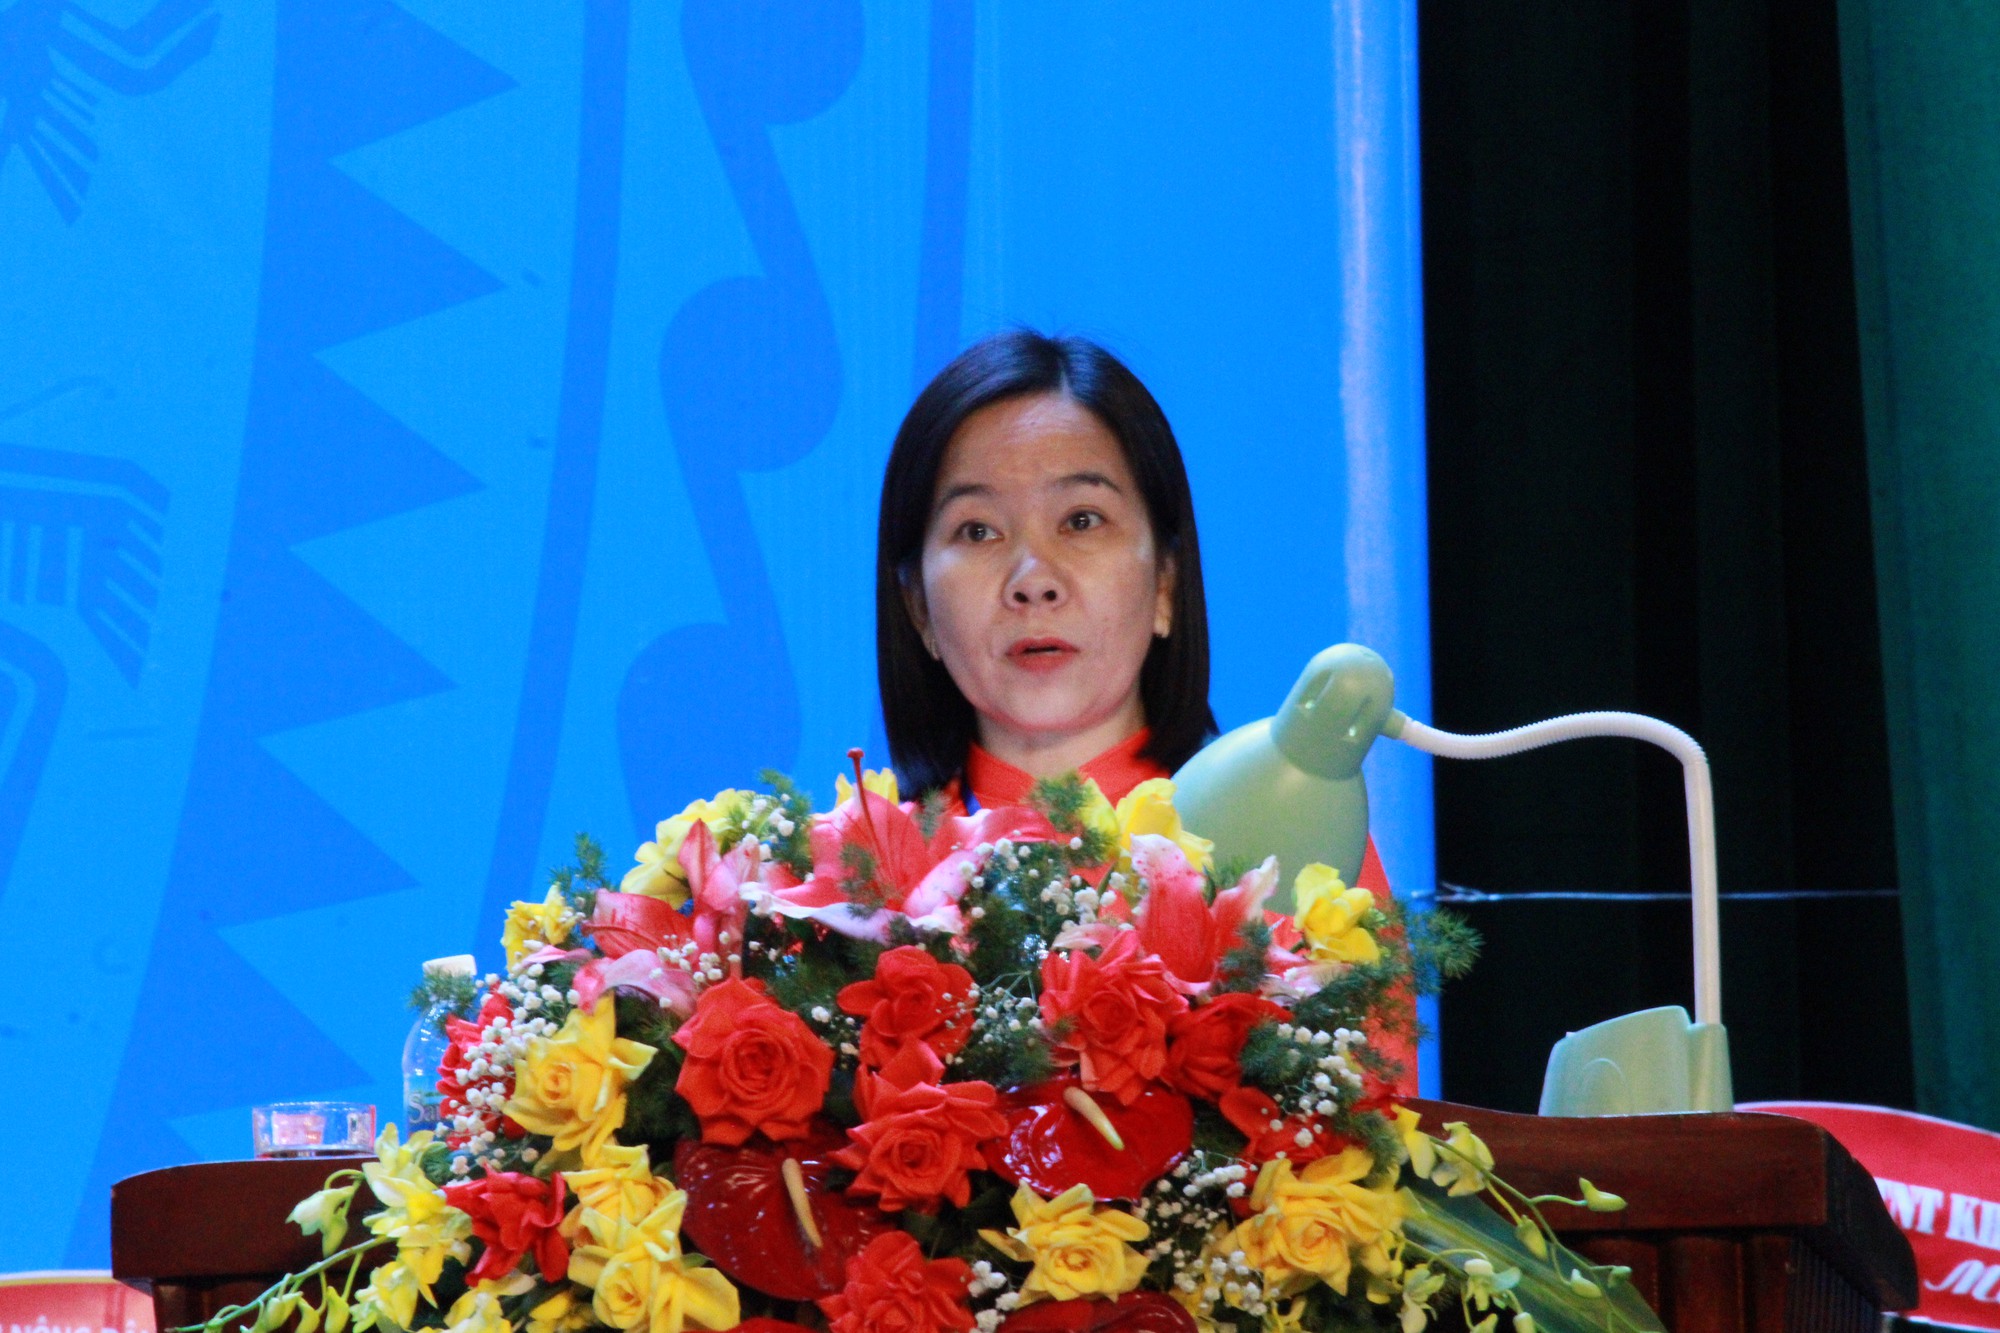 Bà Hà Hồng Hạnh tái đắc cử chức Chủ tịch Hội Nông dân tỉnh Khánh Hòa - Ảnh 1.